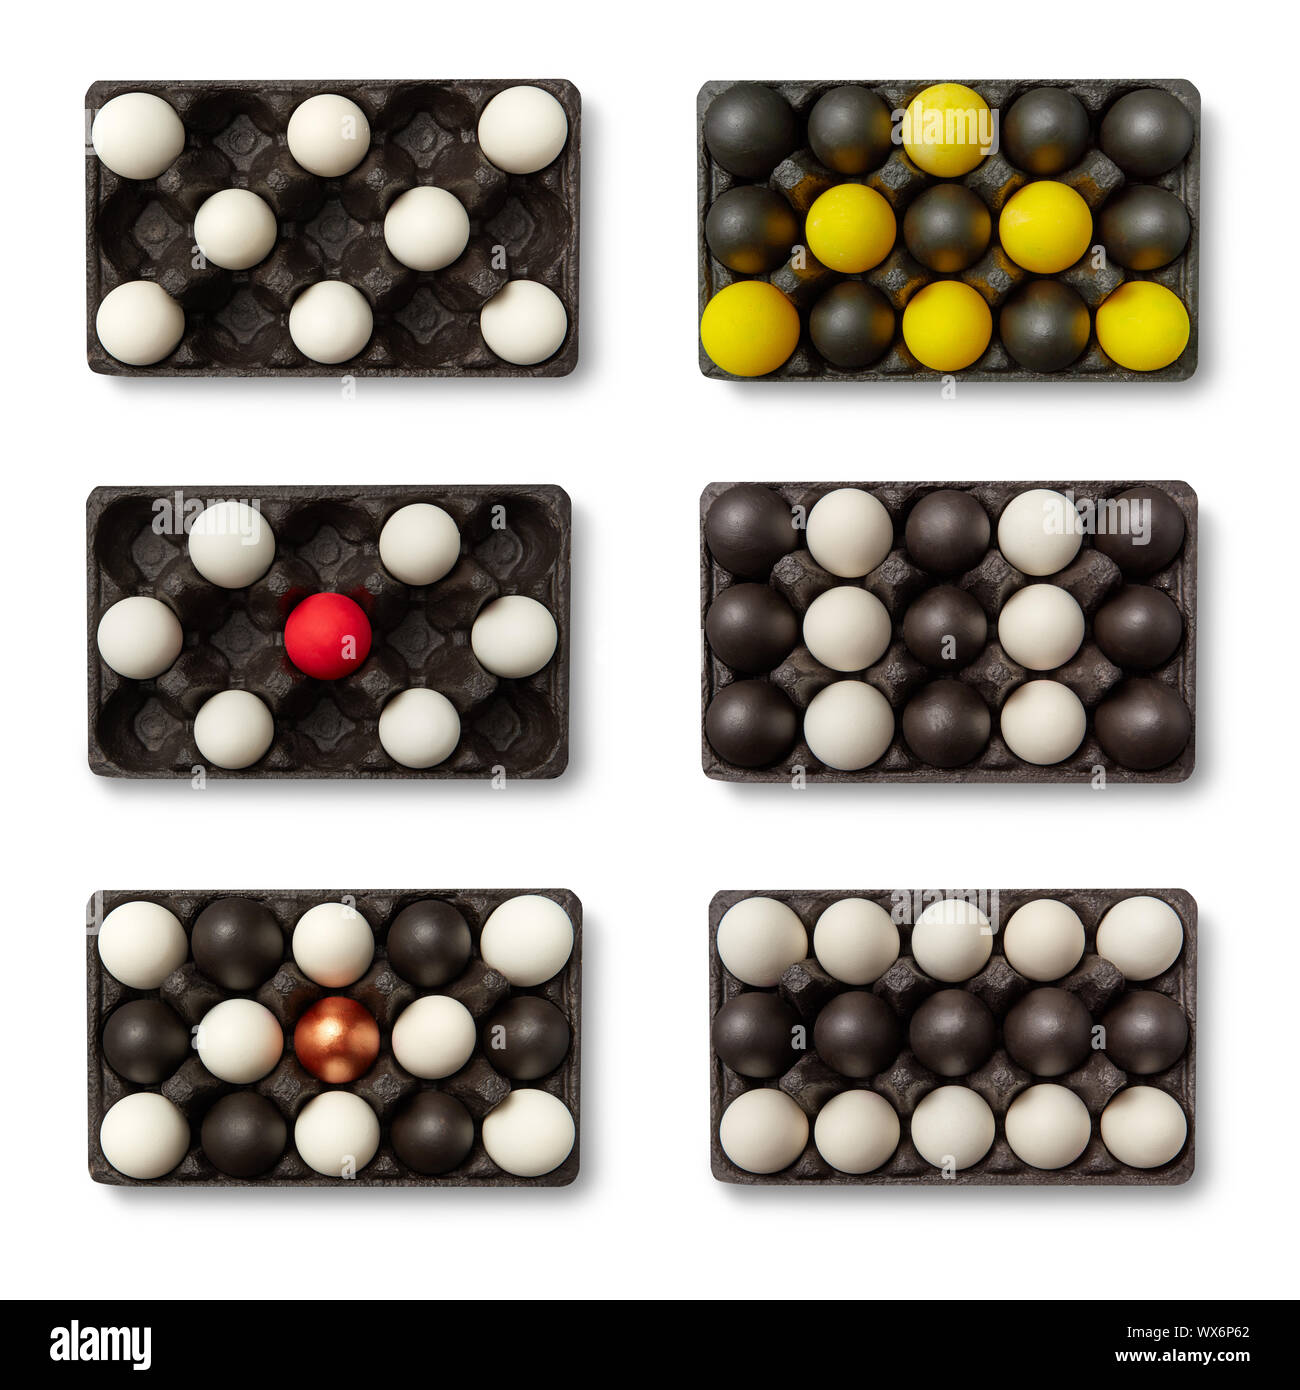 Schwarze Kartons mit unterschiedlichen farbigen Eier in Form von Tetris  Stücke auf einem weißen Hintergrund mit Kopie Raum vorgestellt  Stockfotografie - Alamy